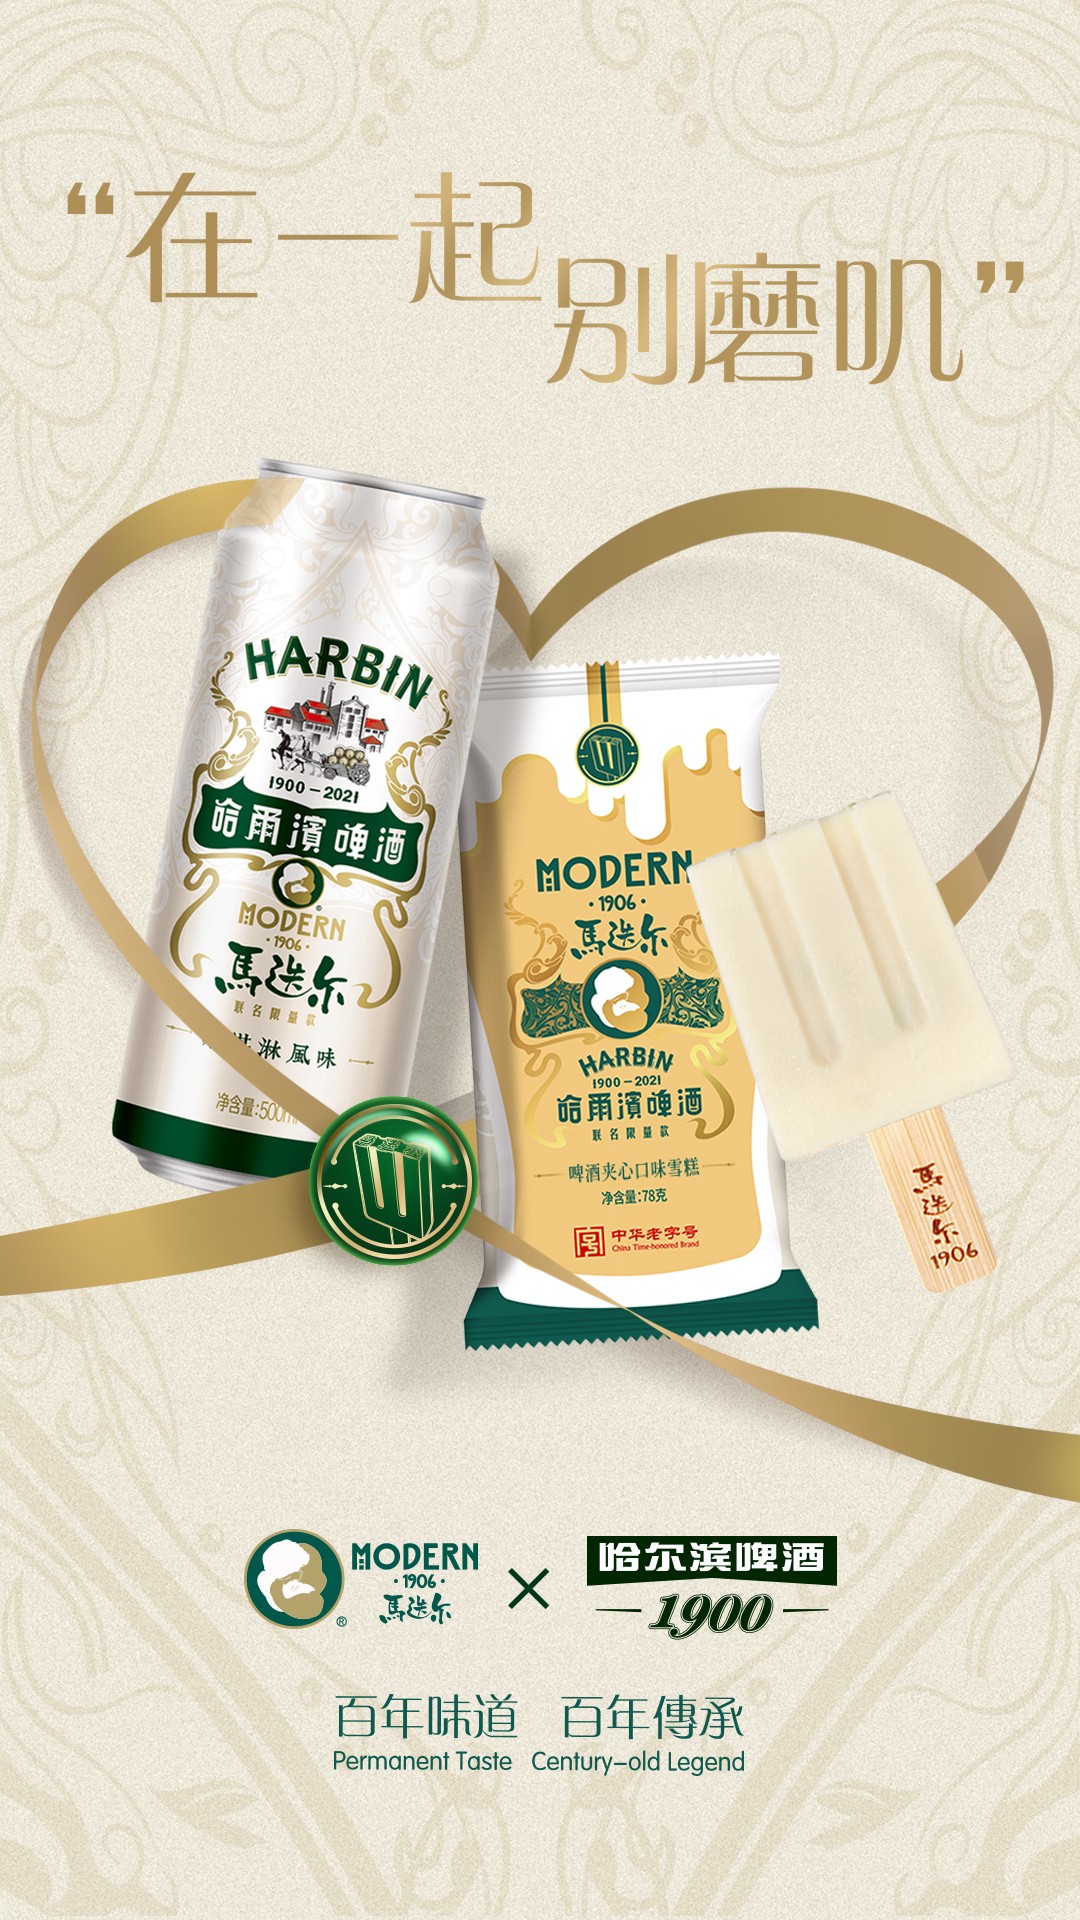 马迭尔与哈尔滨啤酒一个是中国最早的啤酒品牌,一个是百年传承的冰品